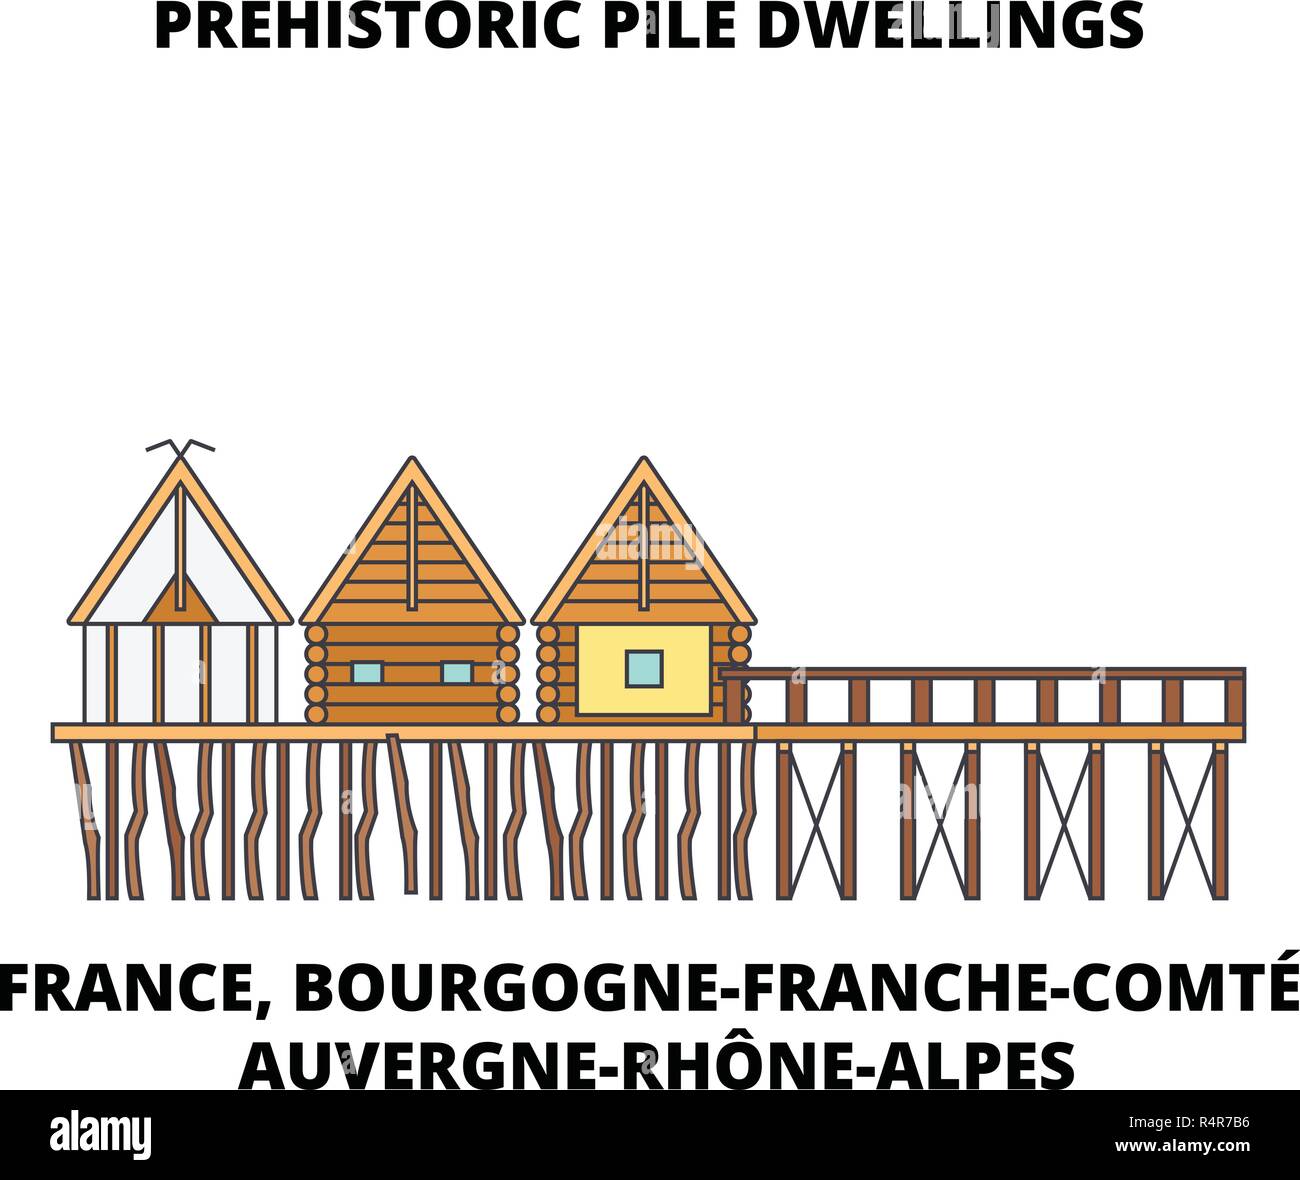 Frankreich, Bourgogne-Franche-ComtE, Auvergne-Rh One-Alpes - Prähistorische Pfahlbauten rund um die Alpen line Reisen Sehenswürdigkeit, Skyline vektor design Stock Vektor